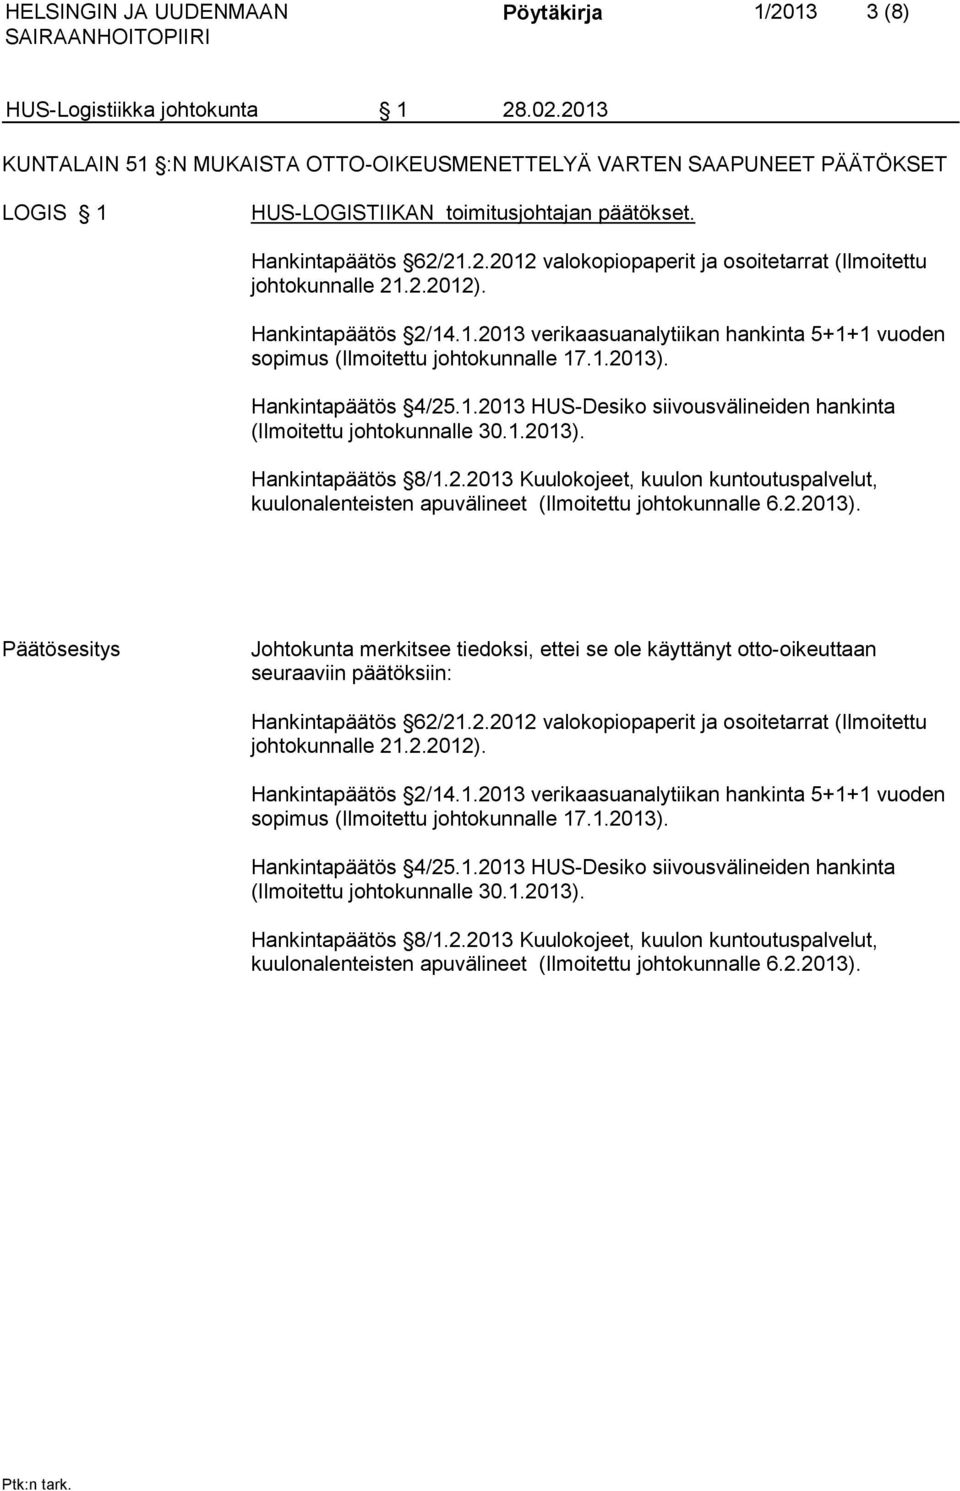 2.2012). Hankintapäätös 2/14.1.2013 verikaasuanalytiikan hankinta 5+1+1 vuoden sopimus (Ilmoitettu johtokunnalle 17.1.2013). Hankintapäätös 4/25.1.2013 HUS-Desiko siivousvälineiden hankinta (Ilmoitettu johtokunnalle 30.